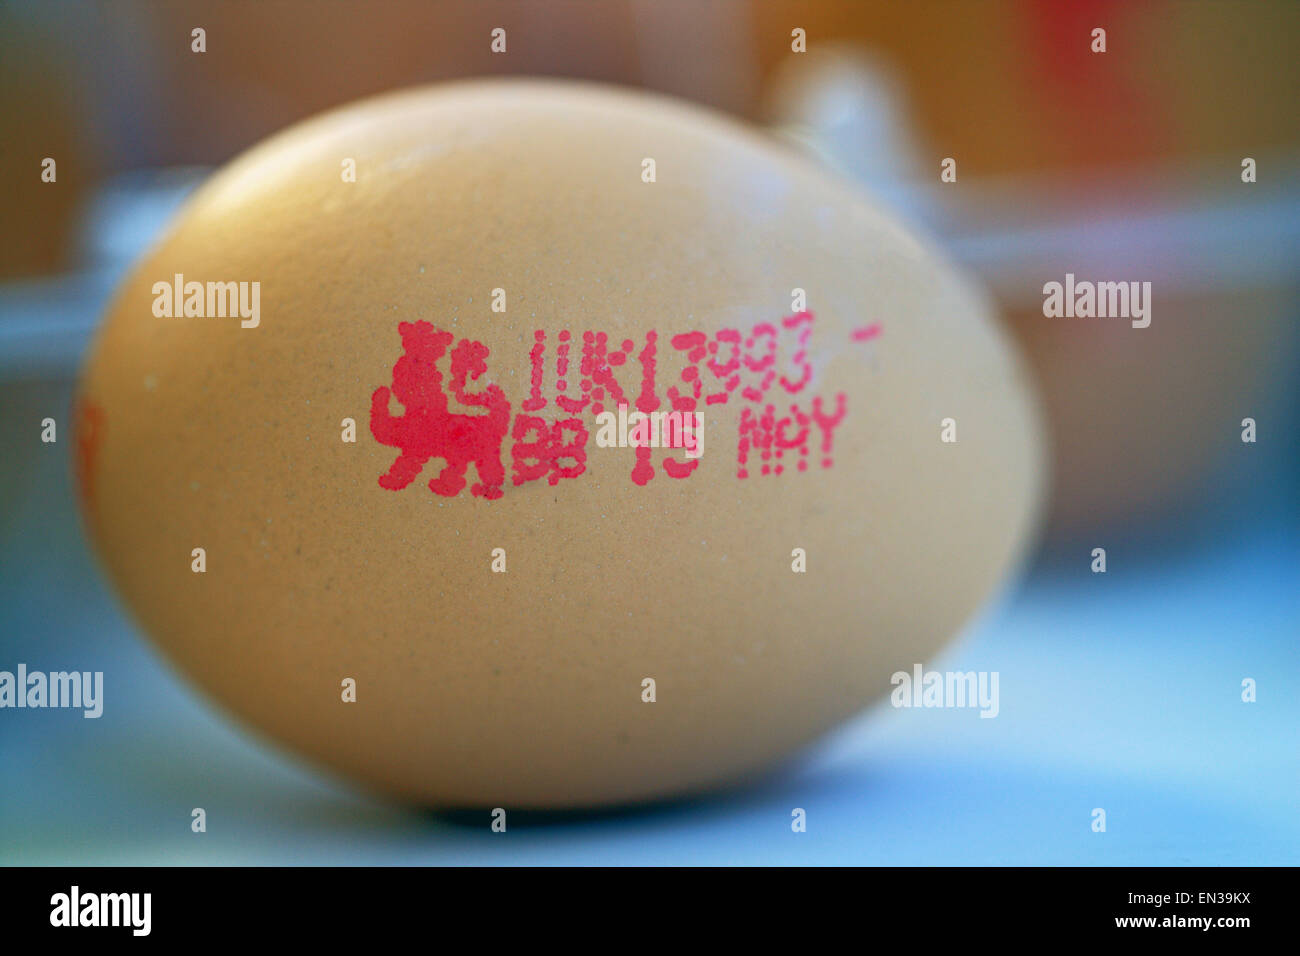 Ei mit dem britischen Löwen-Gütezeichen und die Nummer 1 UK Kennzeichnung bezeichnet, eine Freilandhaltung Ei aus Großbritannien und ein Mindesthaltbarkeitsdatum Stockfoto